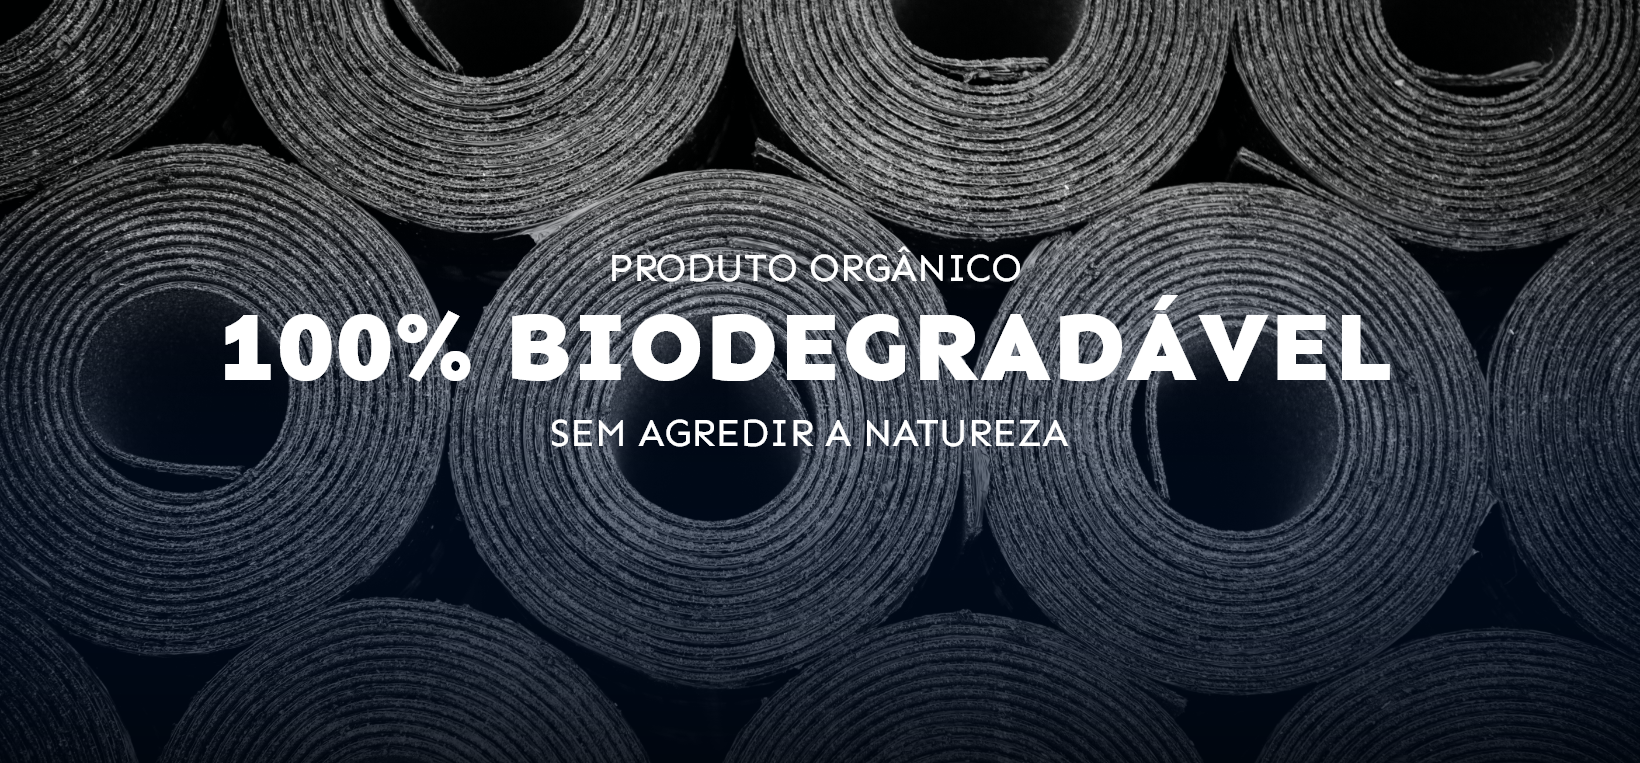 Produto orgânico 100% biodegradável sem agredir a natureza